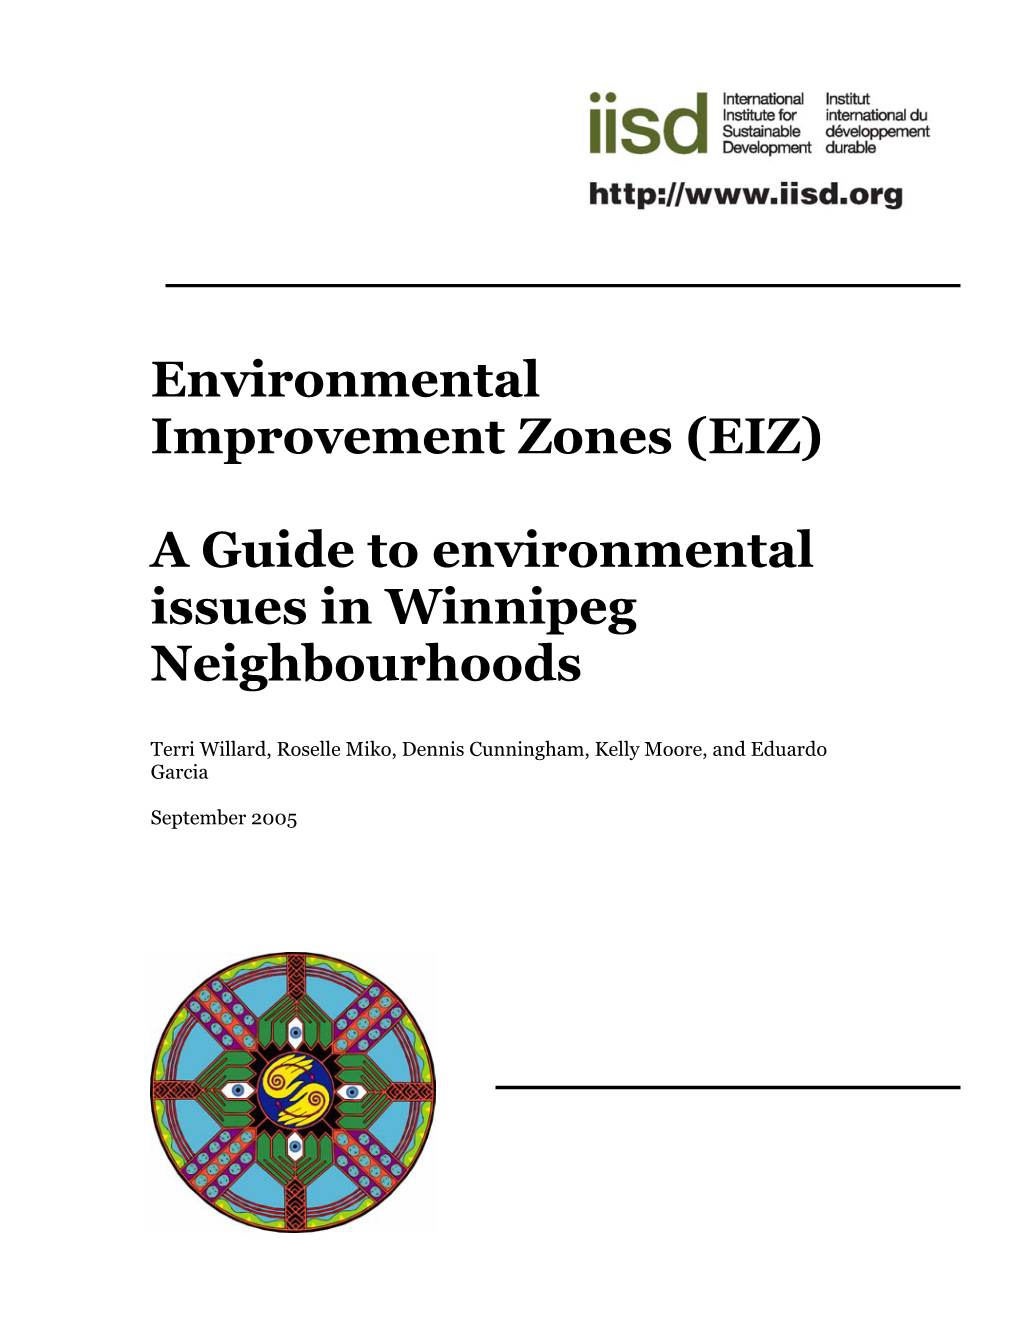 (EIZ): a Guide to Environmental Issues in Winnipeg Neighbourhoods